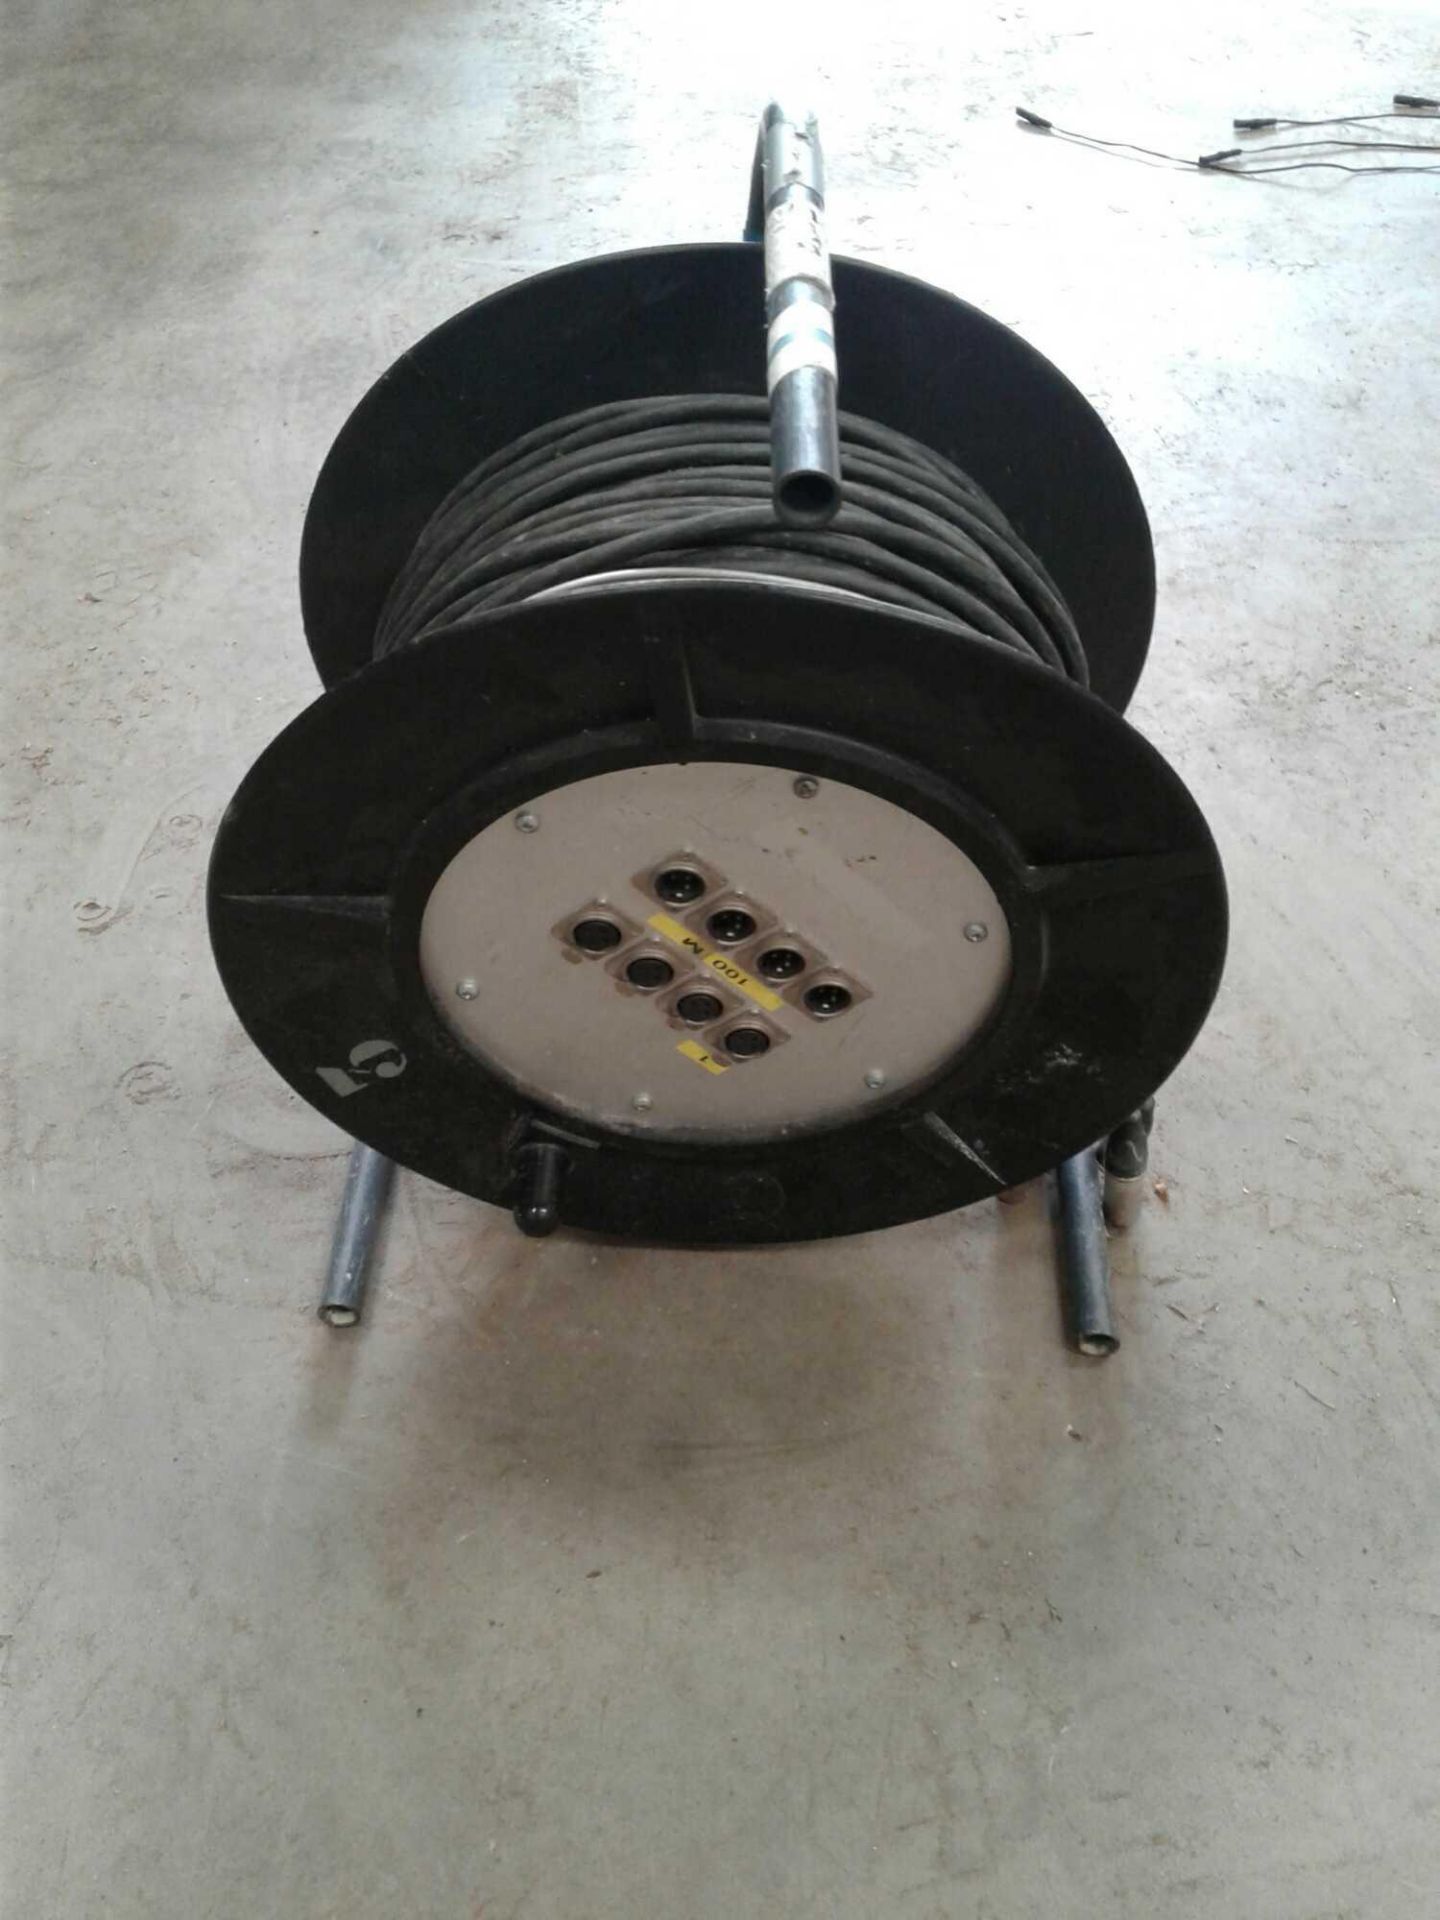 12 core speaker wire on spool